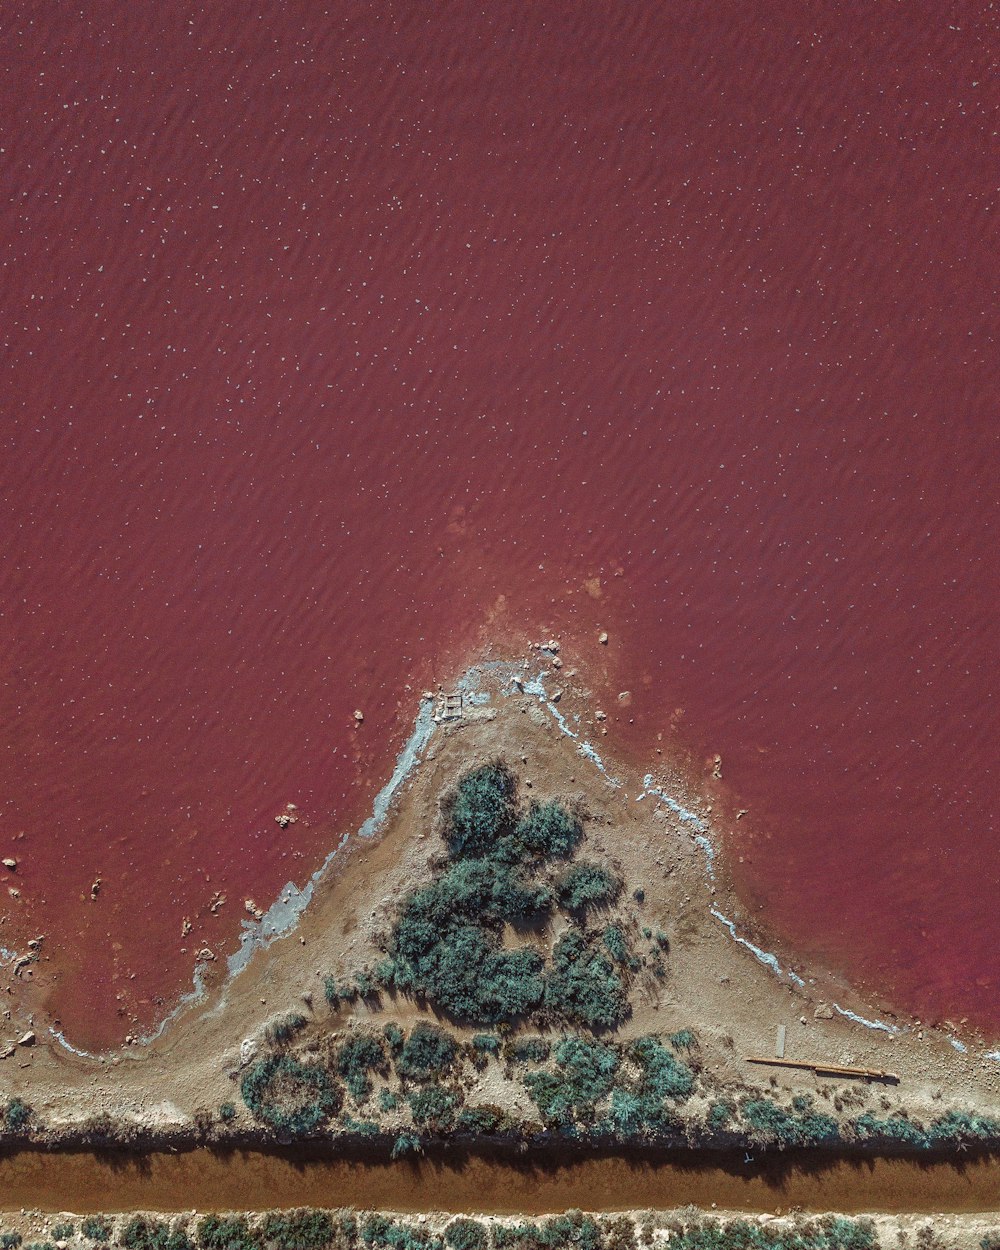 중간에 나무가 있는 붉은 호수의 조감도